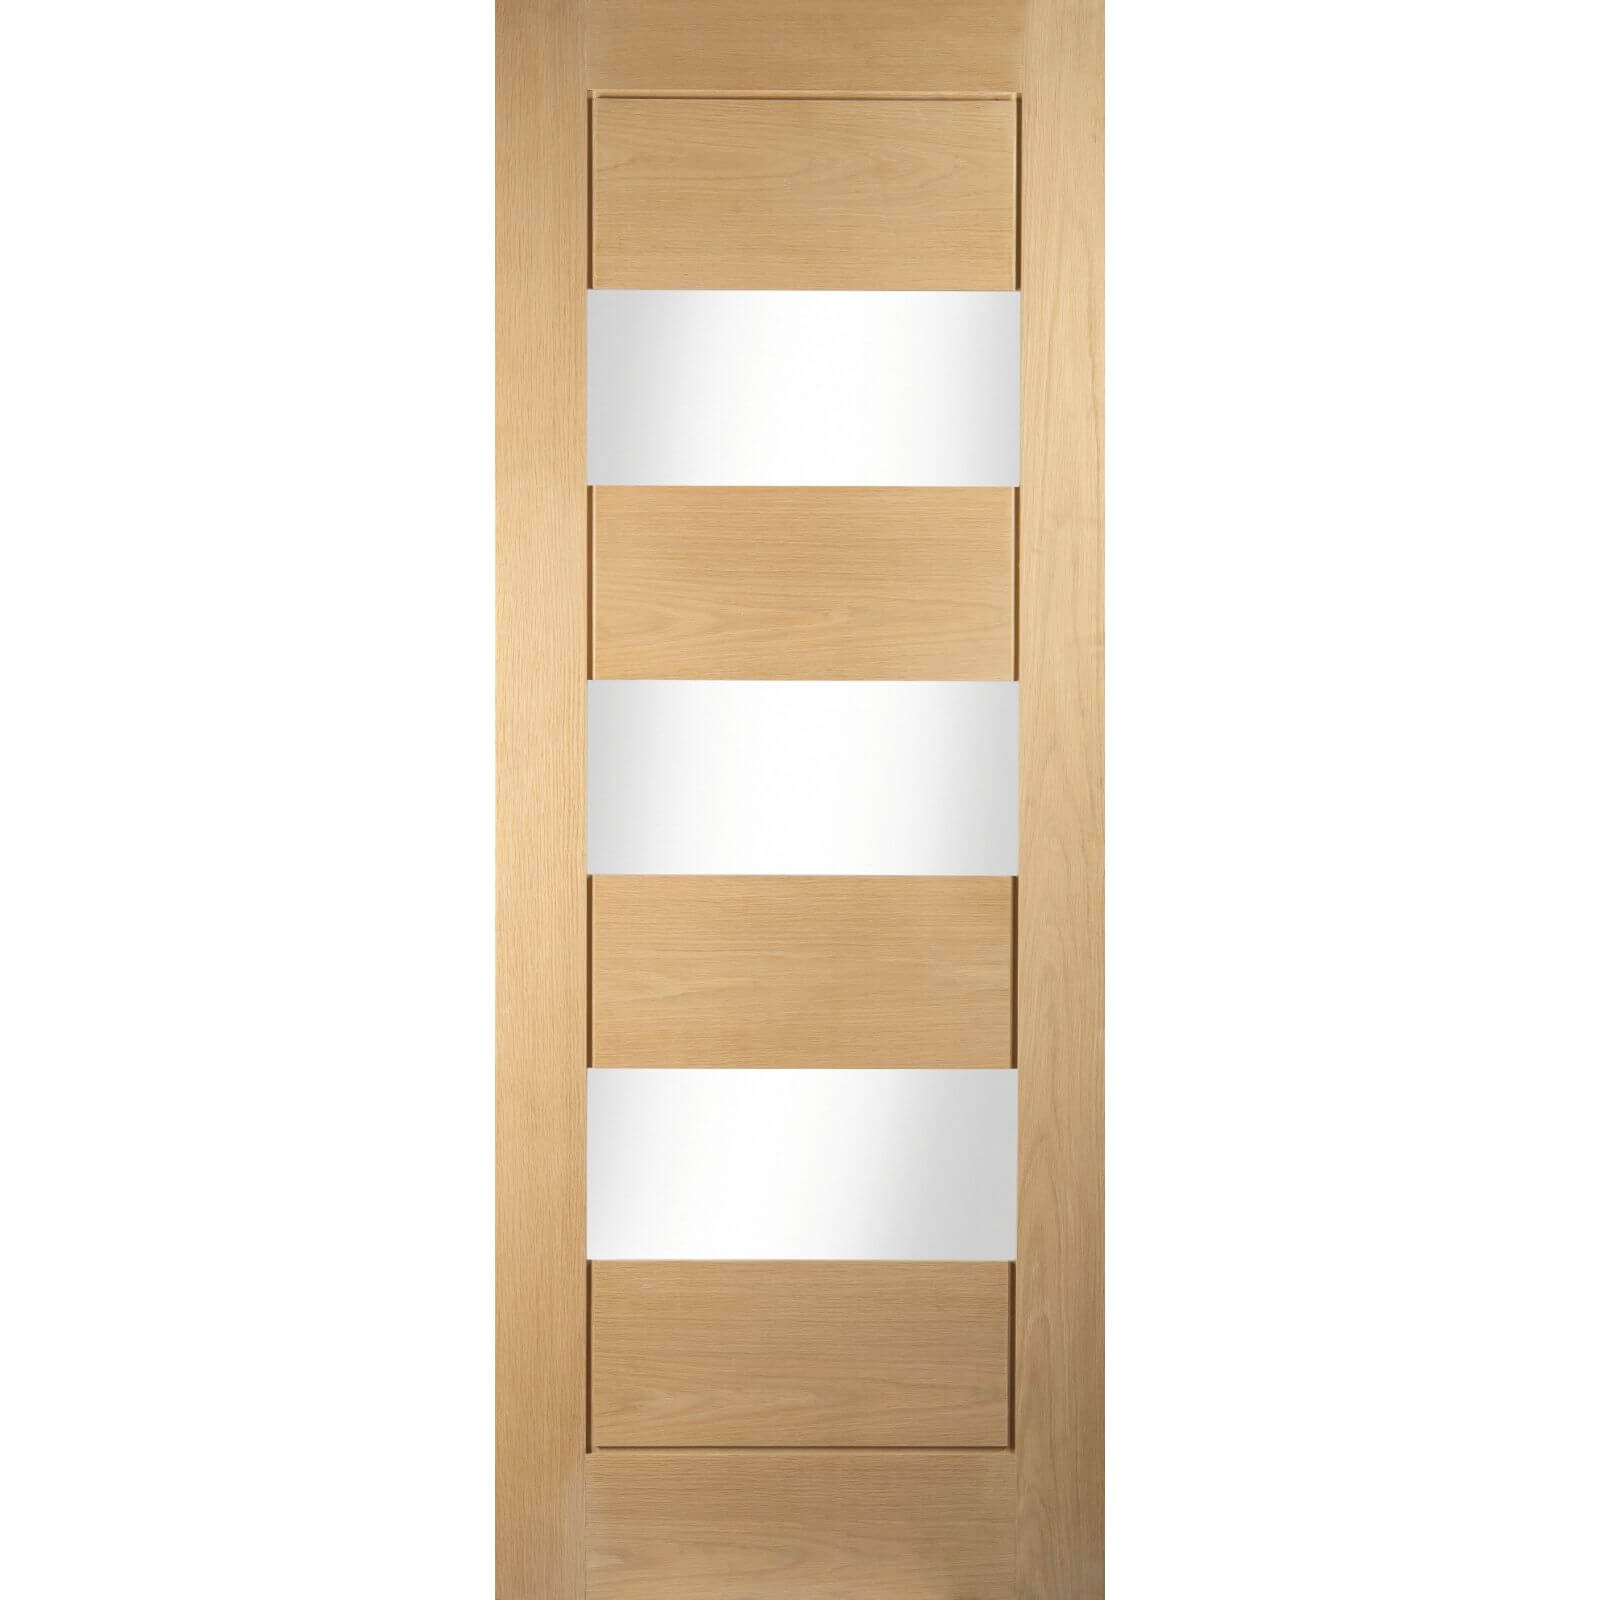 Horizontal 3 Lite White Oak Veneer Internal Door - 686mm Wide